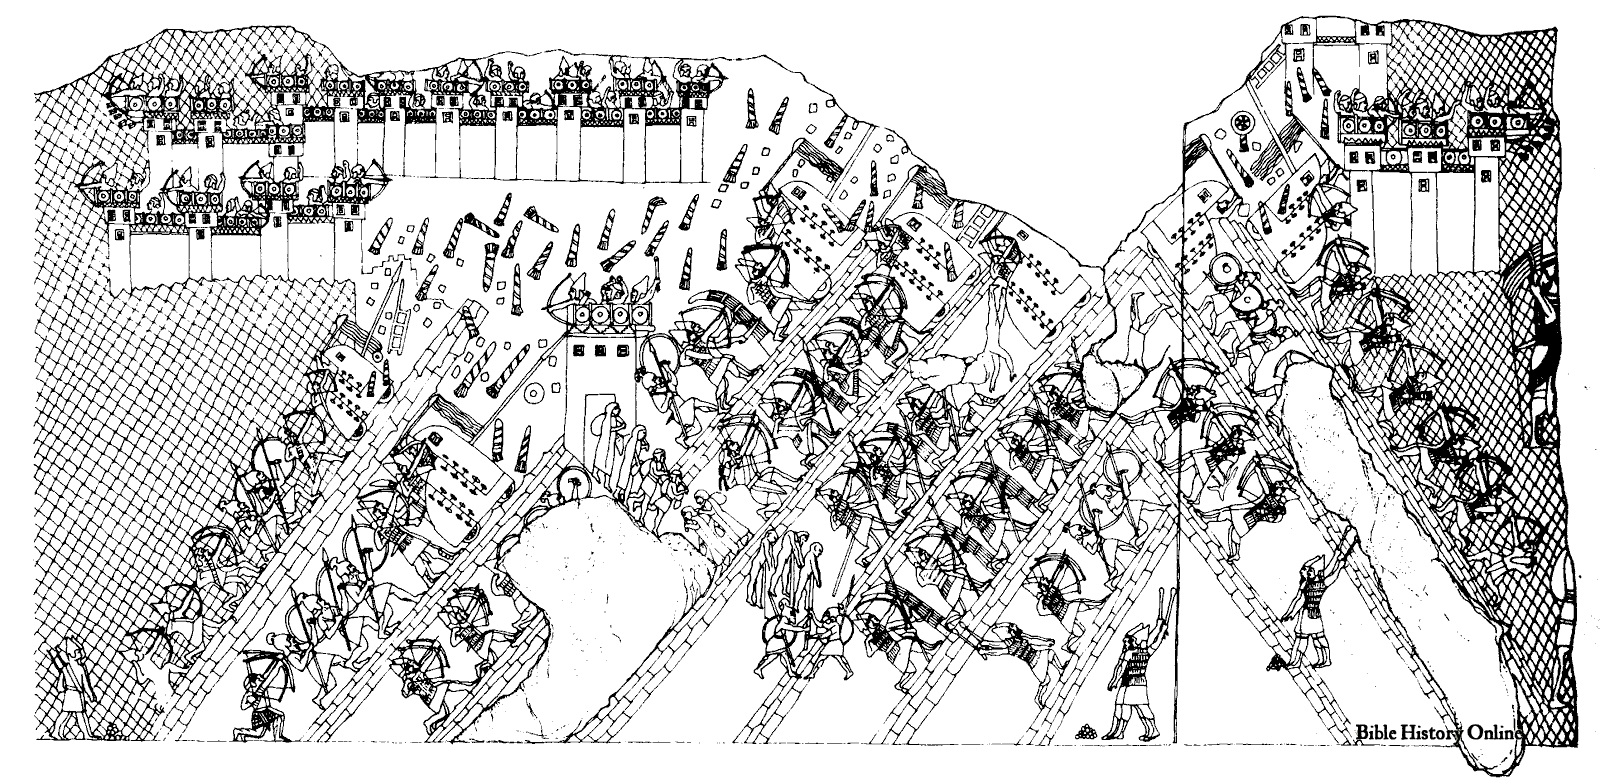 上图：拉吉之围（Siege of Lachish）浮雕上的图画，描绘了主前701年，亚述王西拿基立（Sennacherib）的军队围攻犹大要塞拉吉的惨烈战况。浮雕出土于尼尼微西拿基立的宫殿中，现藏于大英博物馆。